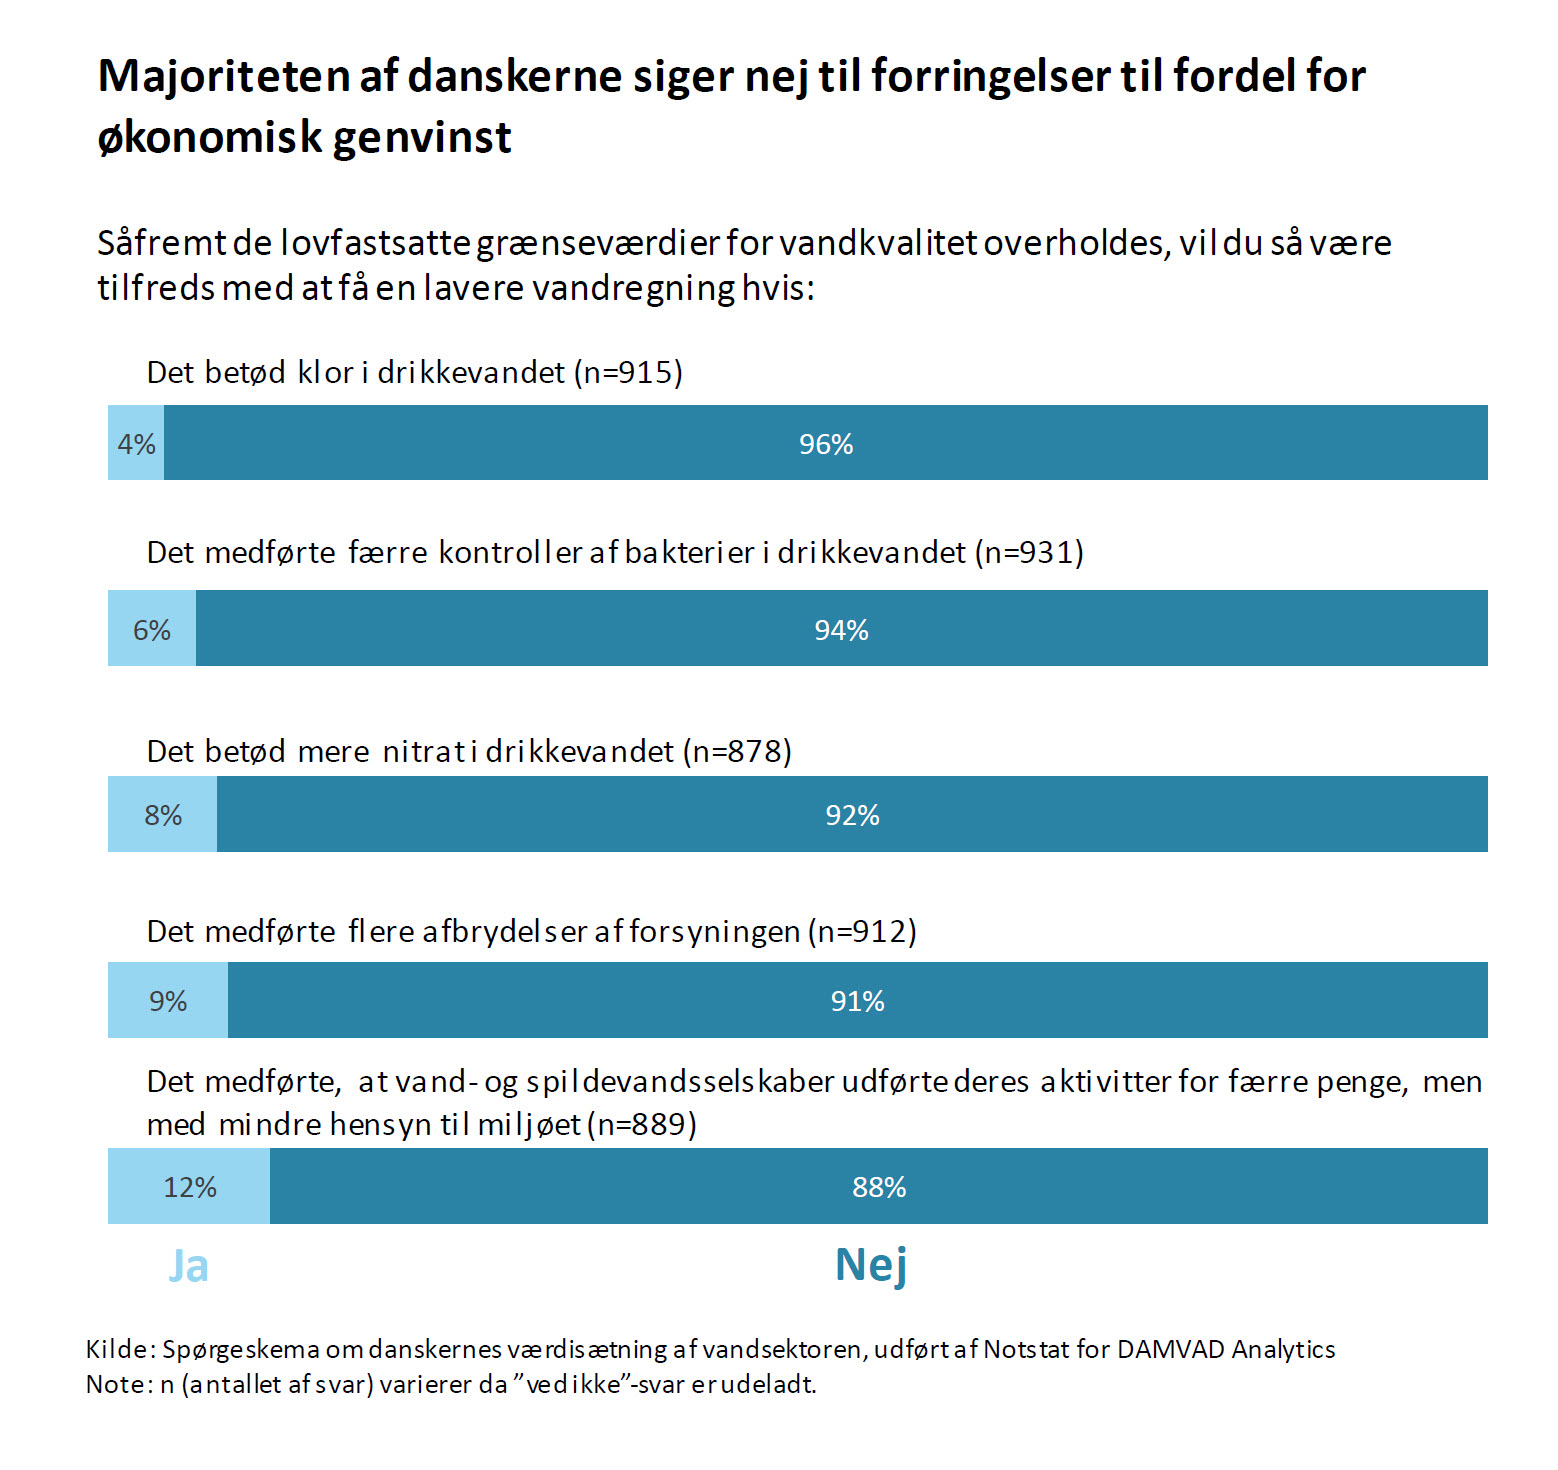 Majoriteten af danskerne siger nej til forringelser til fordel for økonomisk genvinst